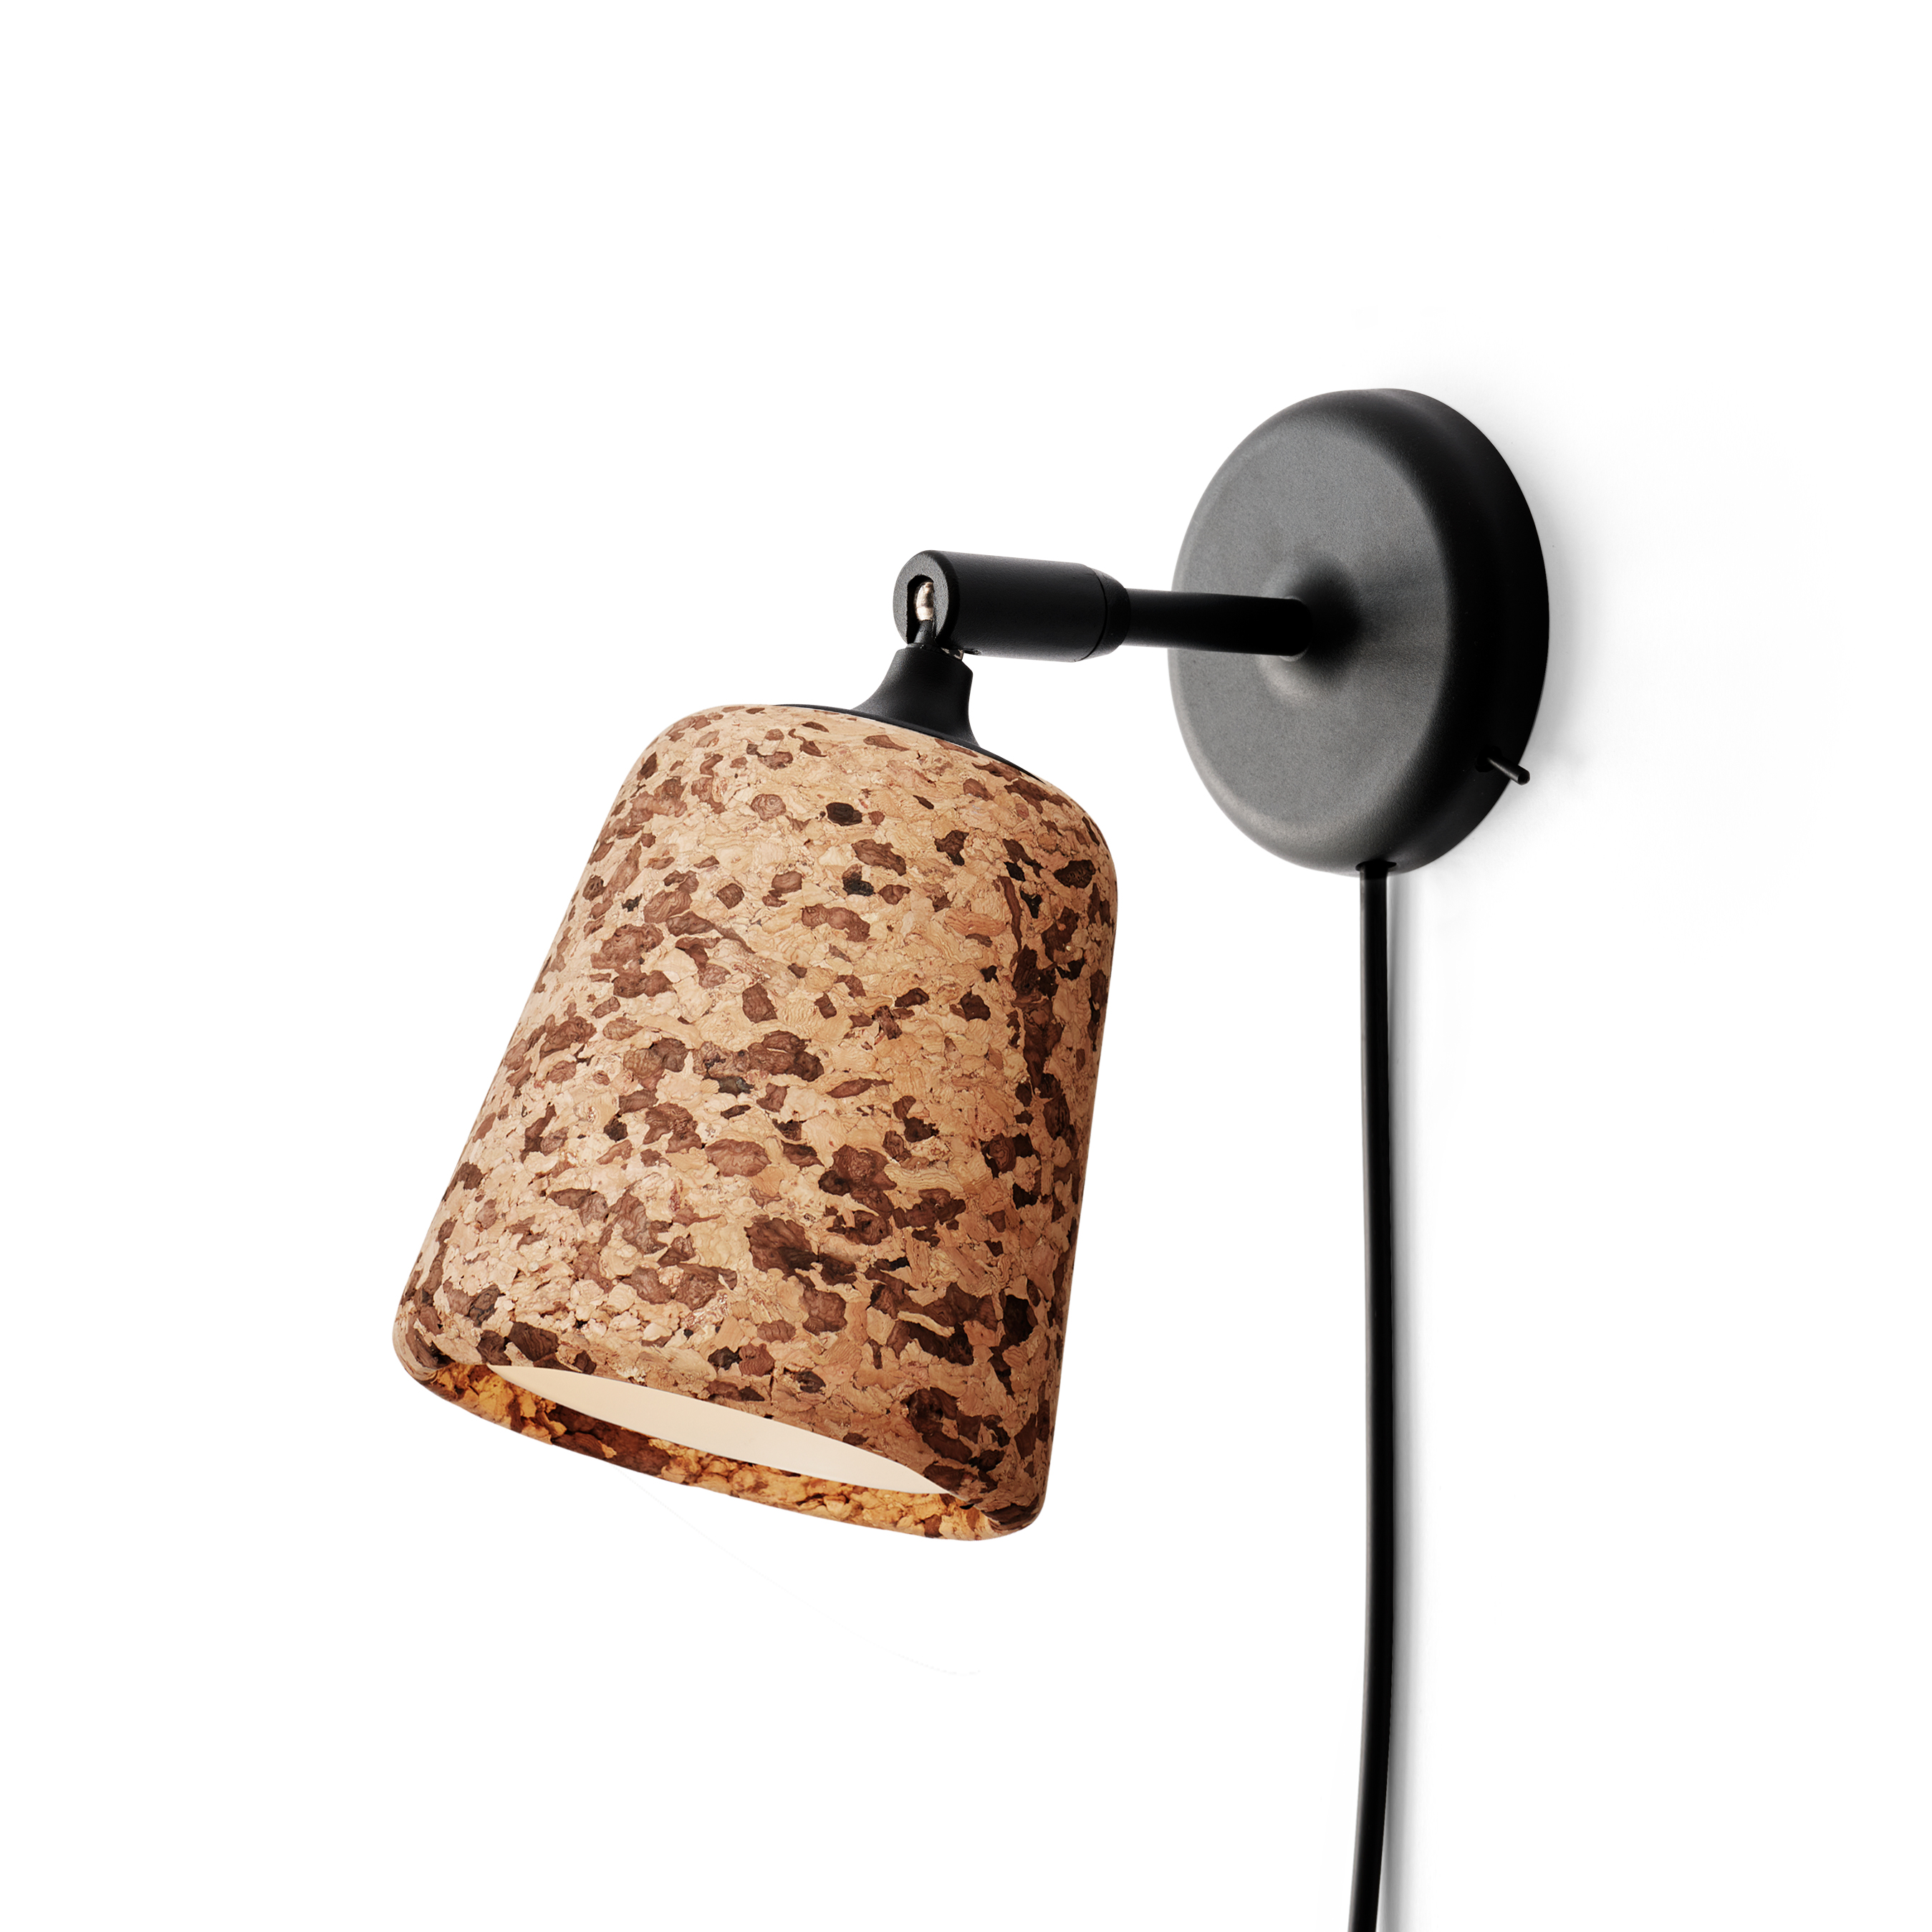 New Works - Shop Lamps, Design & Decor →NordicNest.com